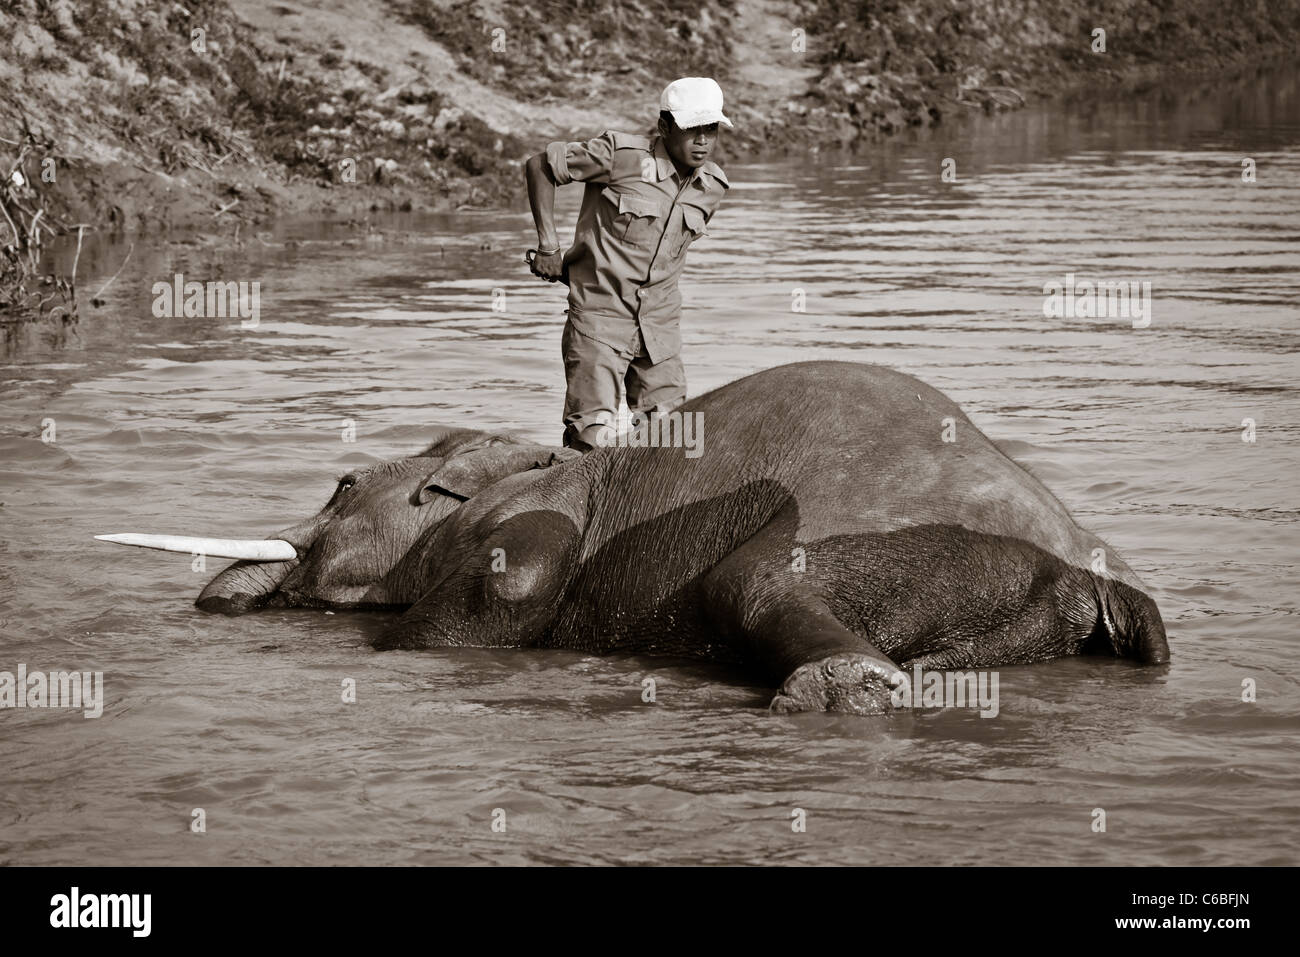 Black and white photo of a man bathing his elephant in Kaziranga National Park, Assam, India Stock Photo